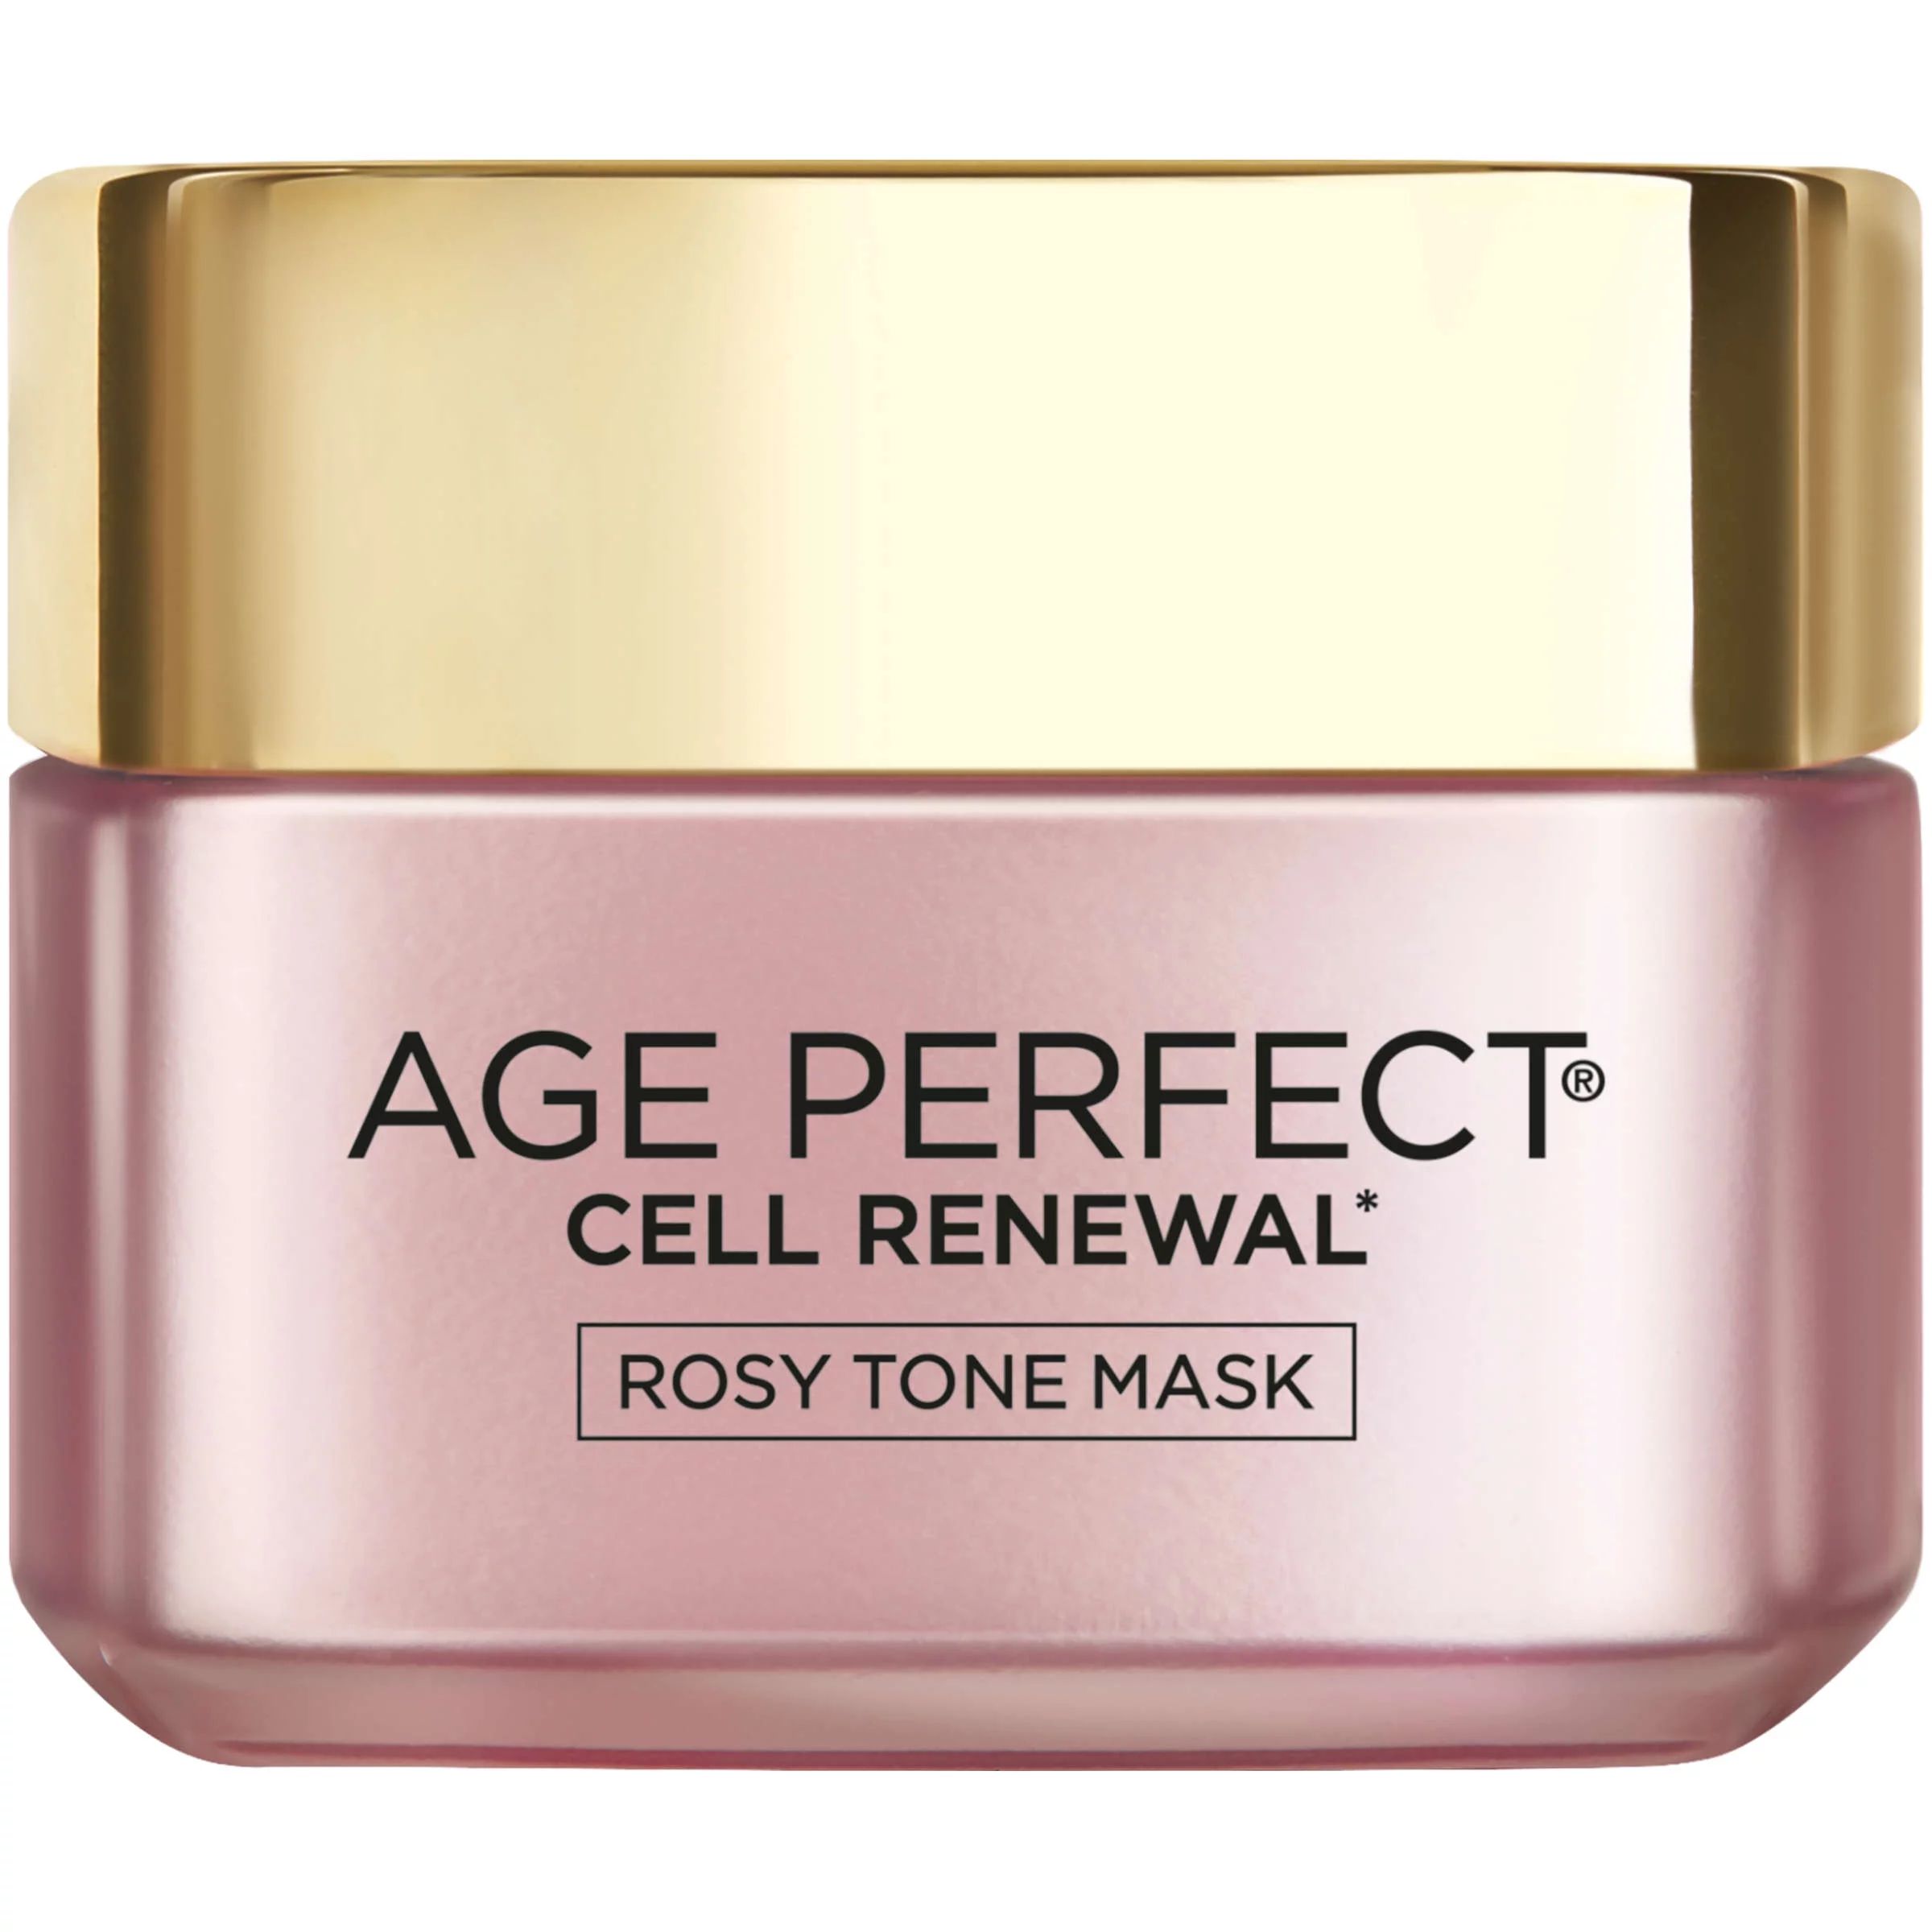 L'Oreal Paris Age Perfect Cell Renewal Rosy Tone Mask, 1.7 oz - Walmart.com | Walmart (US)